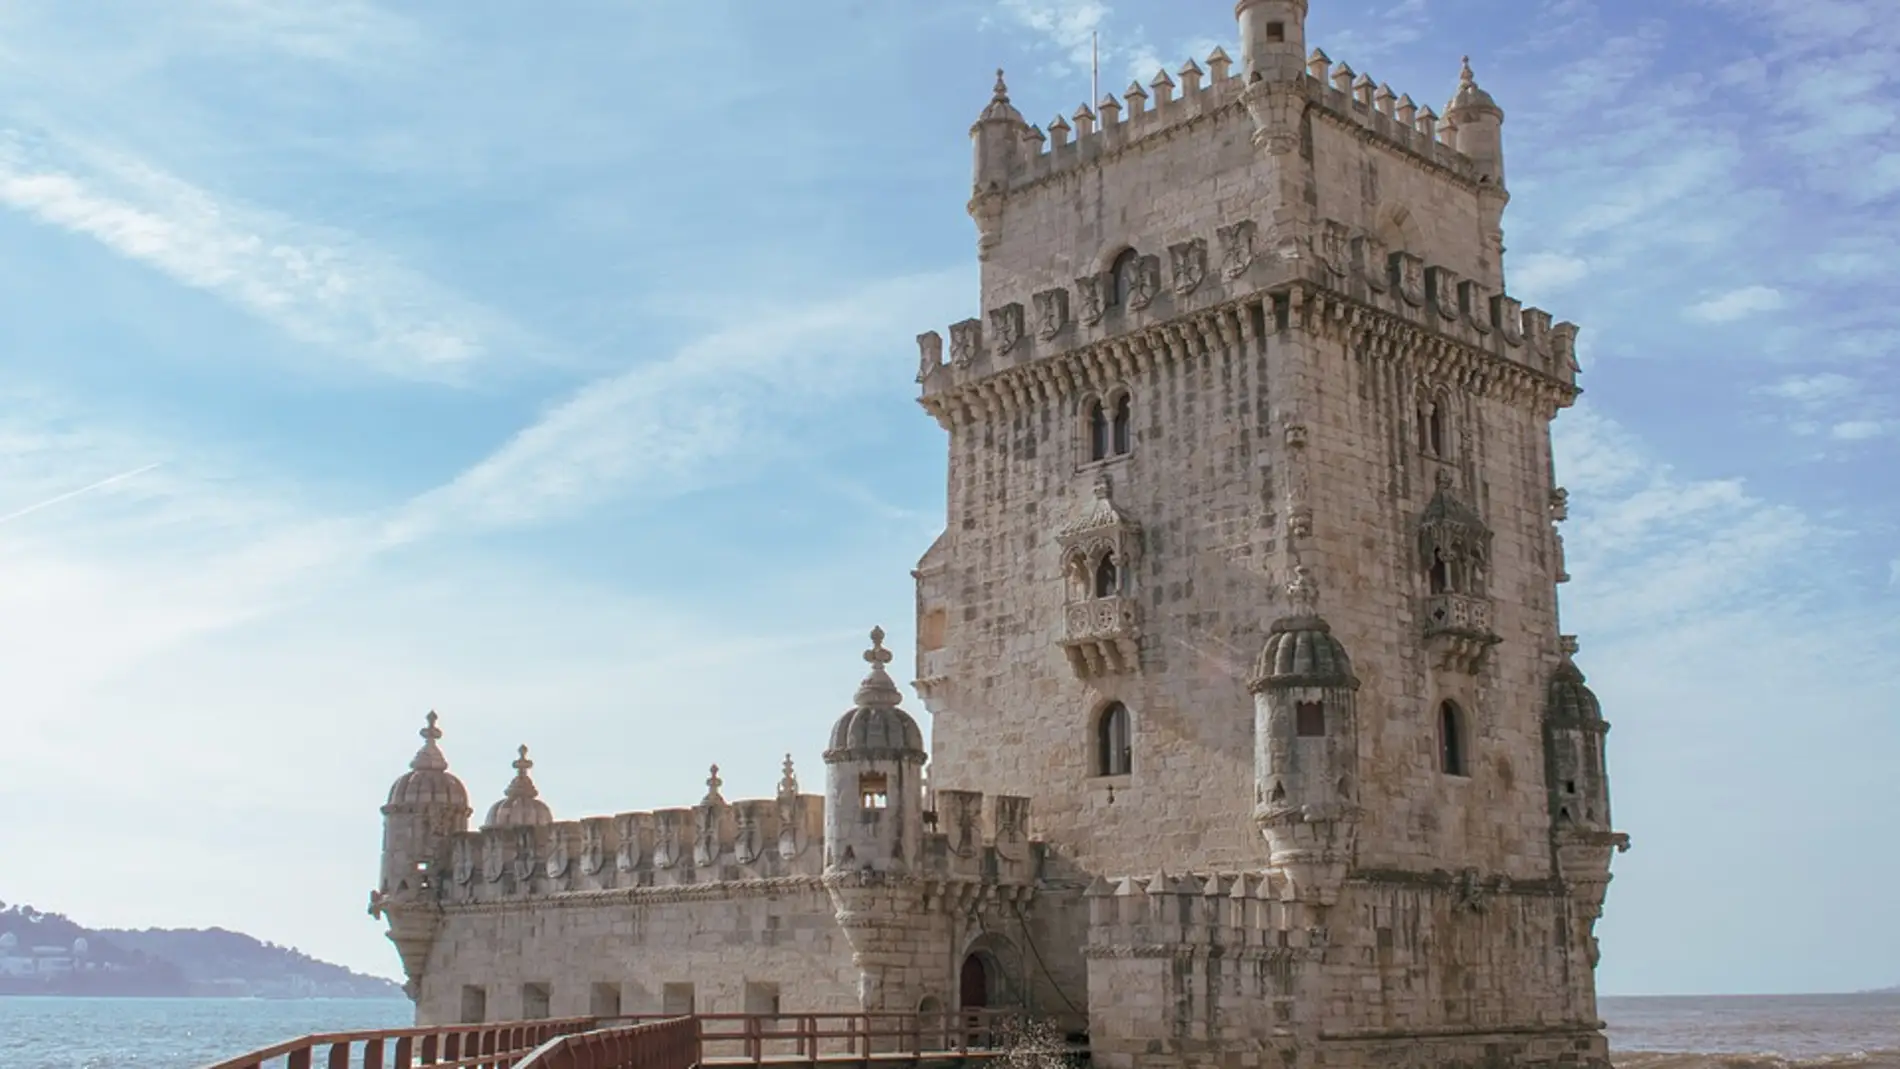 Conoce la Torre de Belém de Lisboa a través de estas curiosidades